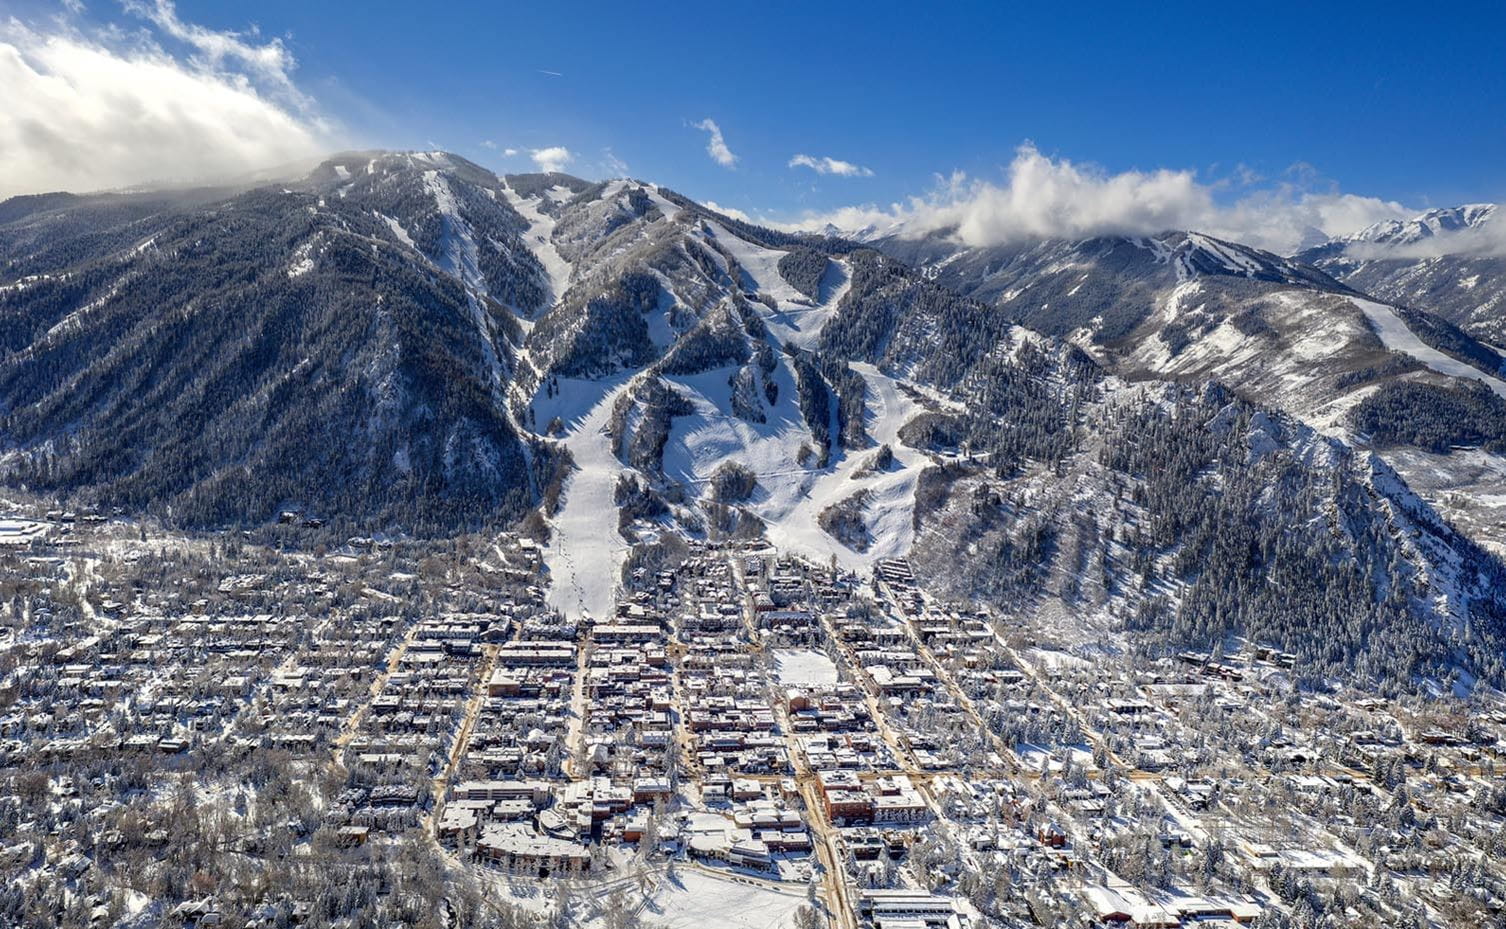 Aspen and Snowmass Lodging | Stay Aspen Snowmass